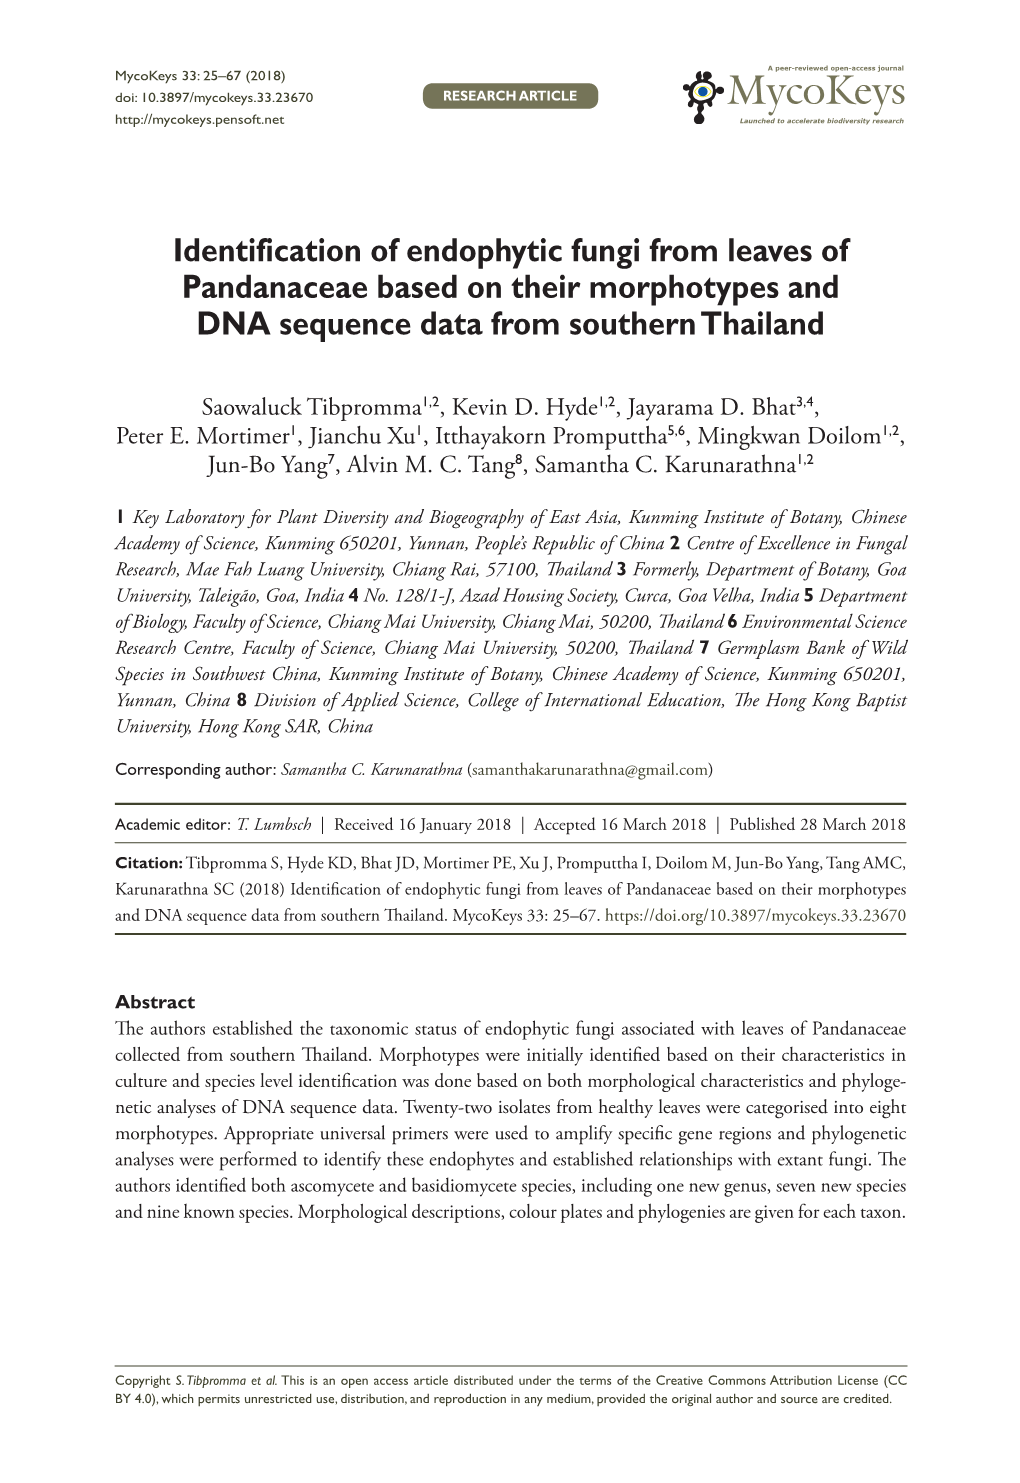 ﻿Identification of Endophytic Fungi from Leaves of Pandanaceae Based On